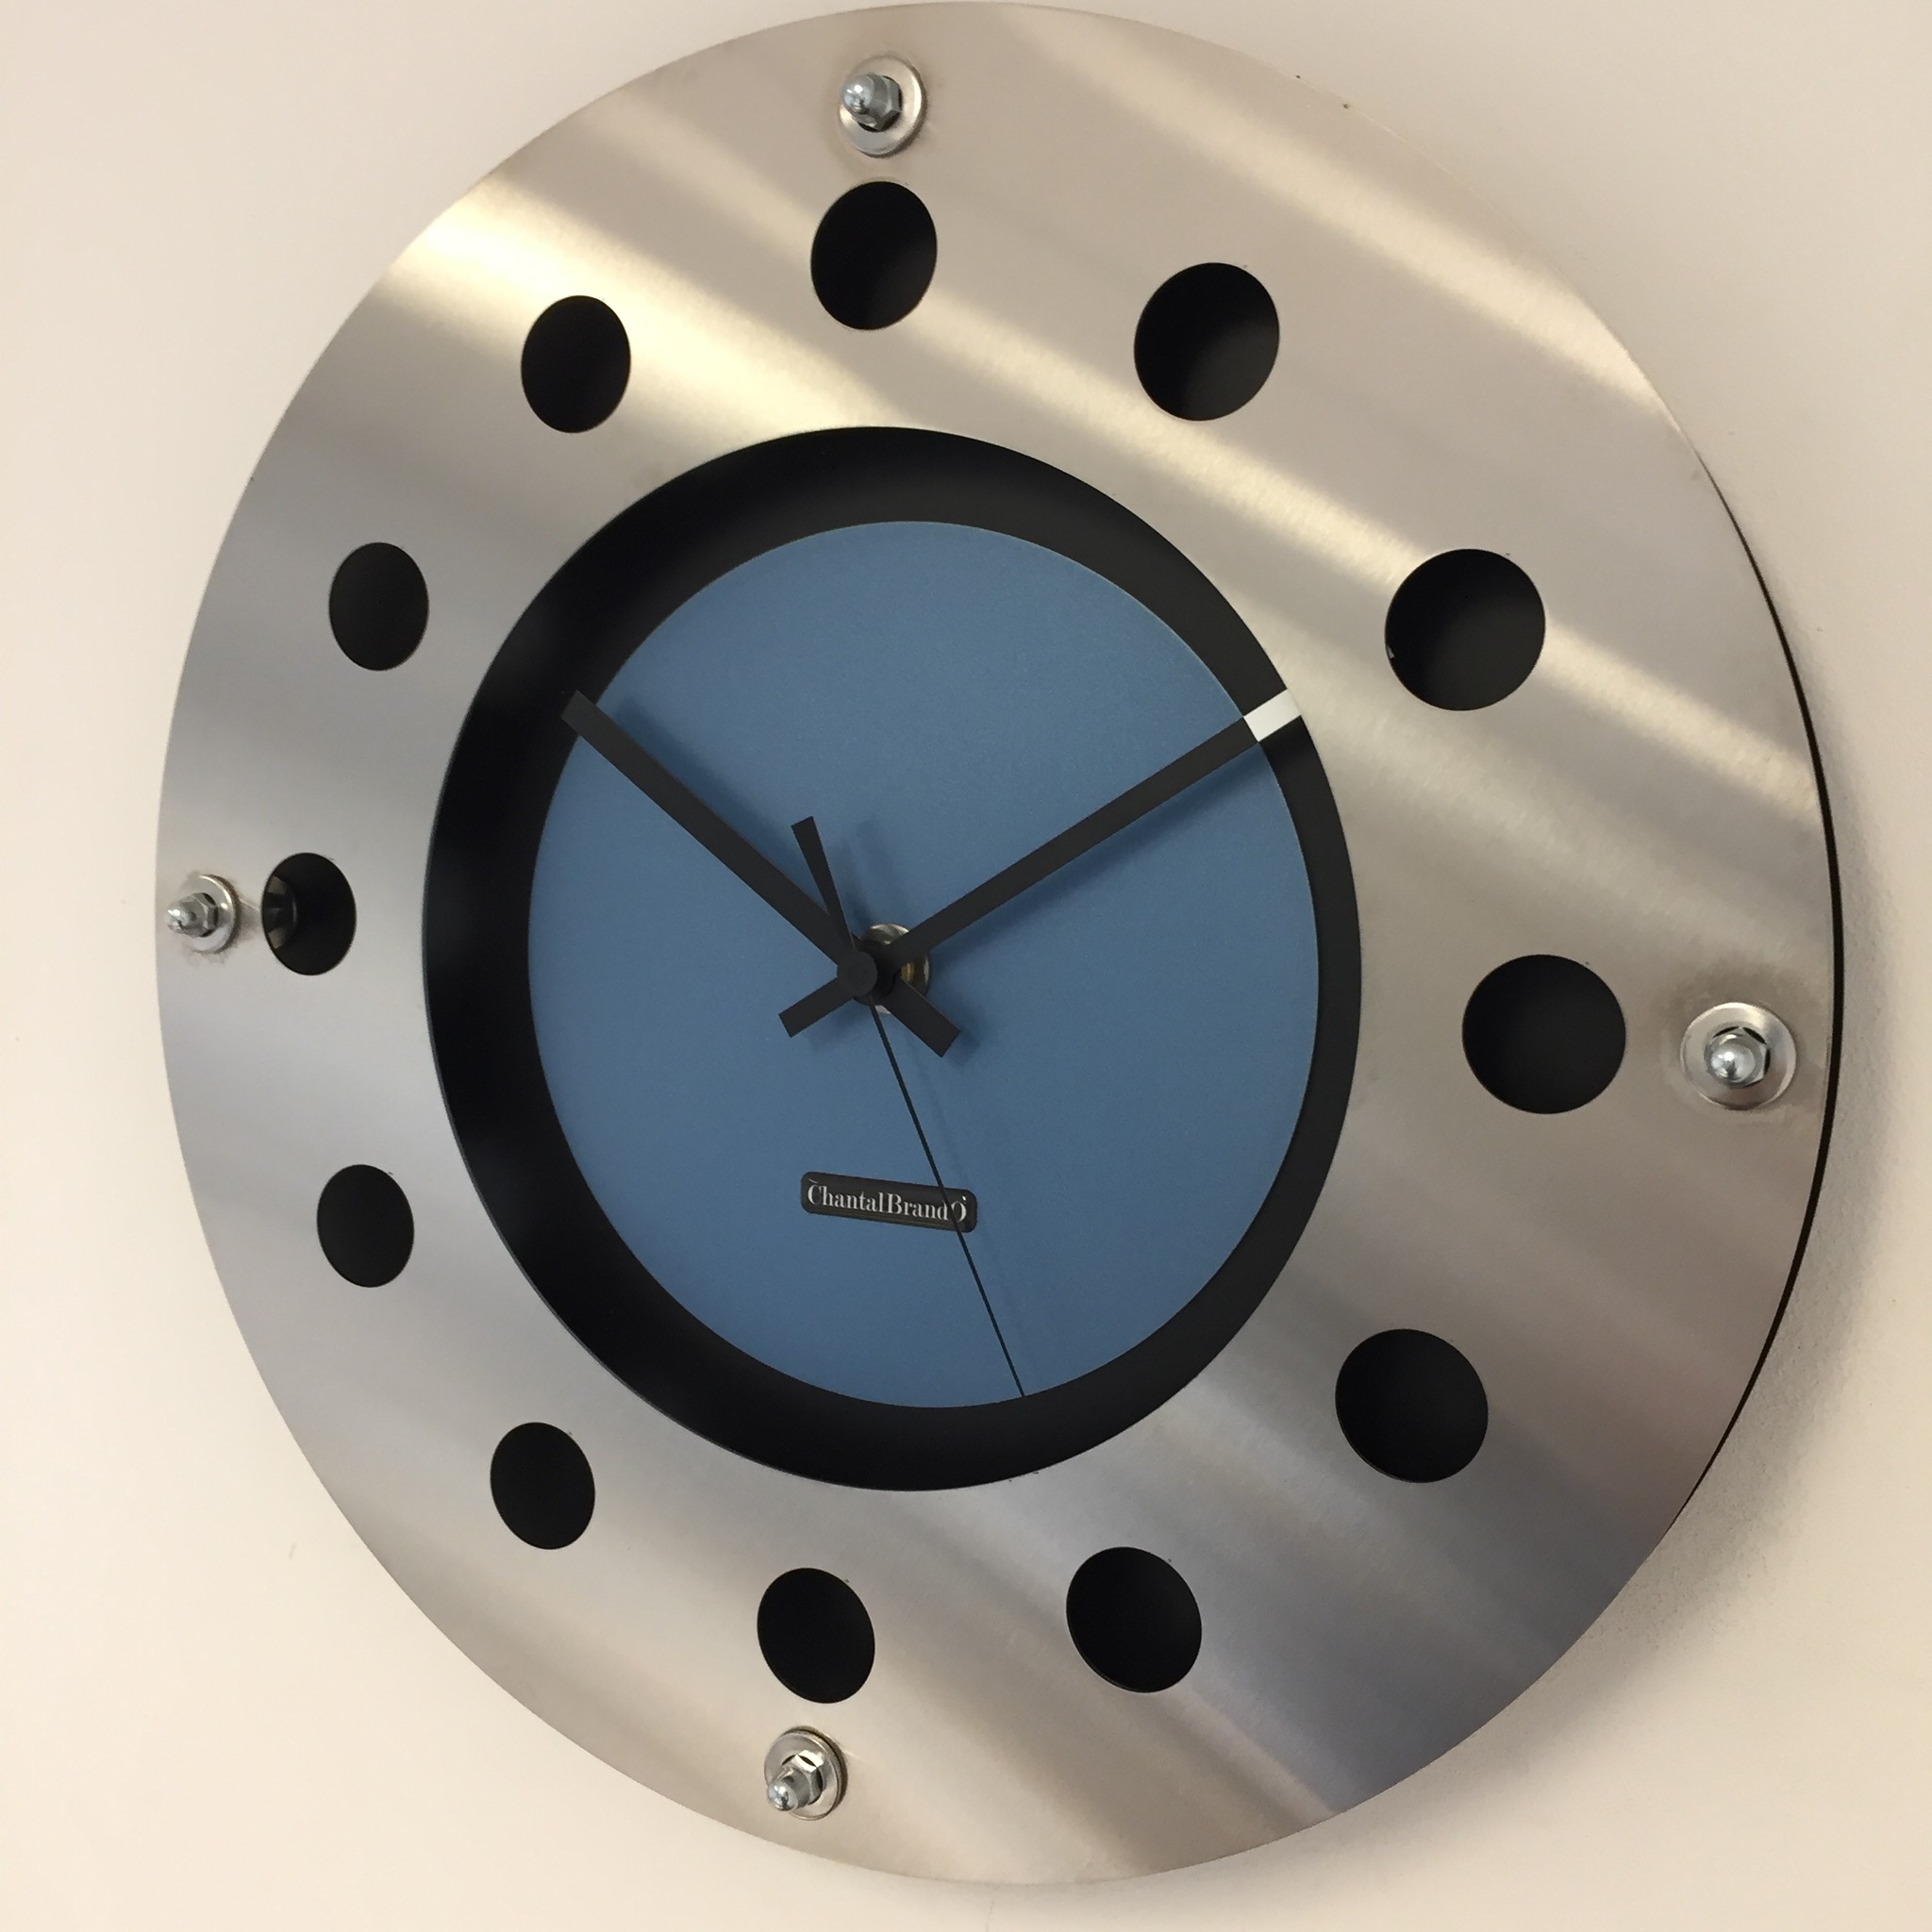 ChantalBrandO Design - Wall clock Mecanica Entire Black with Light Blue Color Small Inside Circle Black Pointer Modern Dutch Design Handmade 40 cm